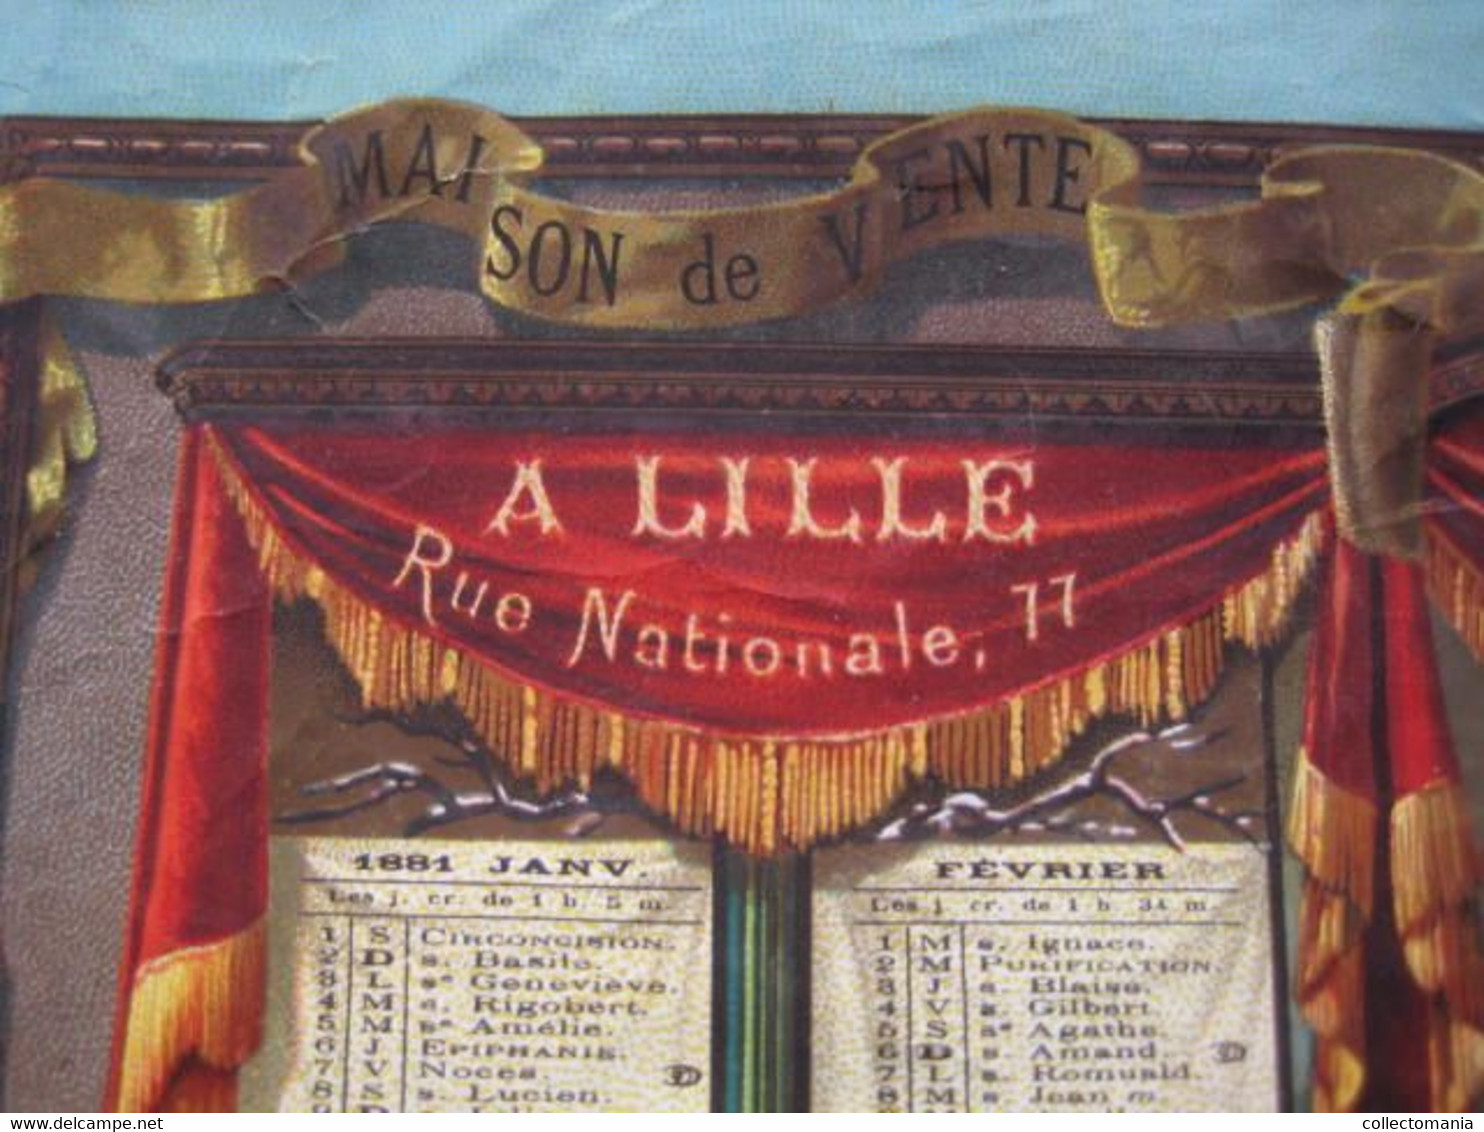 Grande Calendrier 1881 LITHO APPEL 12 Rue Du Delta Drukker Imprimeur Kalender AU VIEUX CHENE, LILLE France 48cmX30cm PUB - Autres